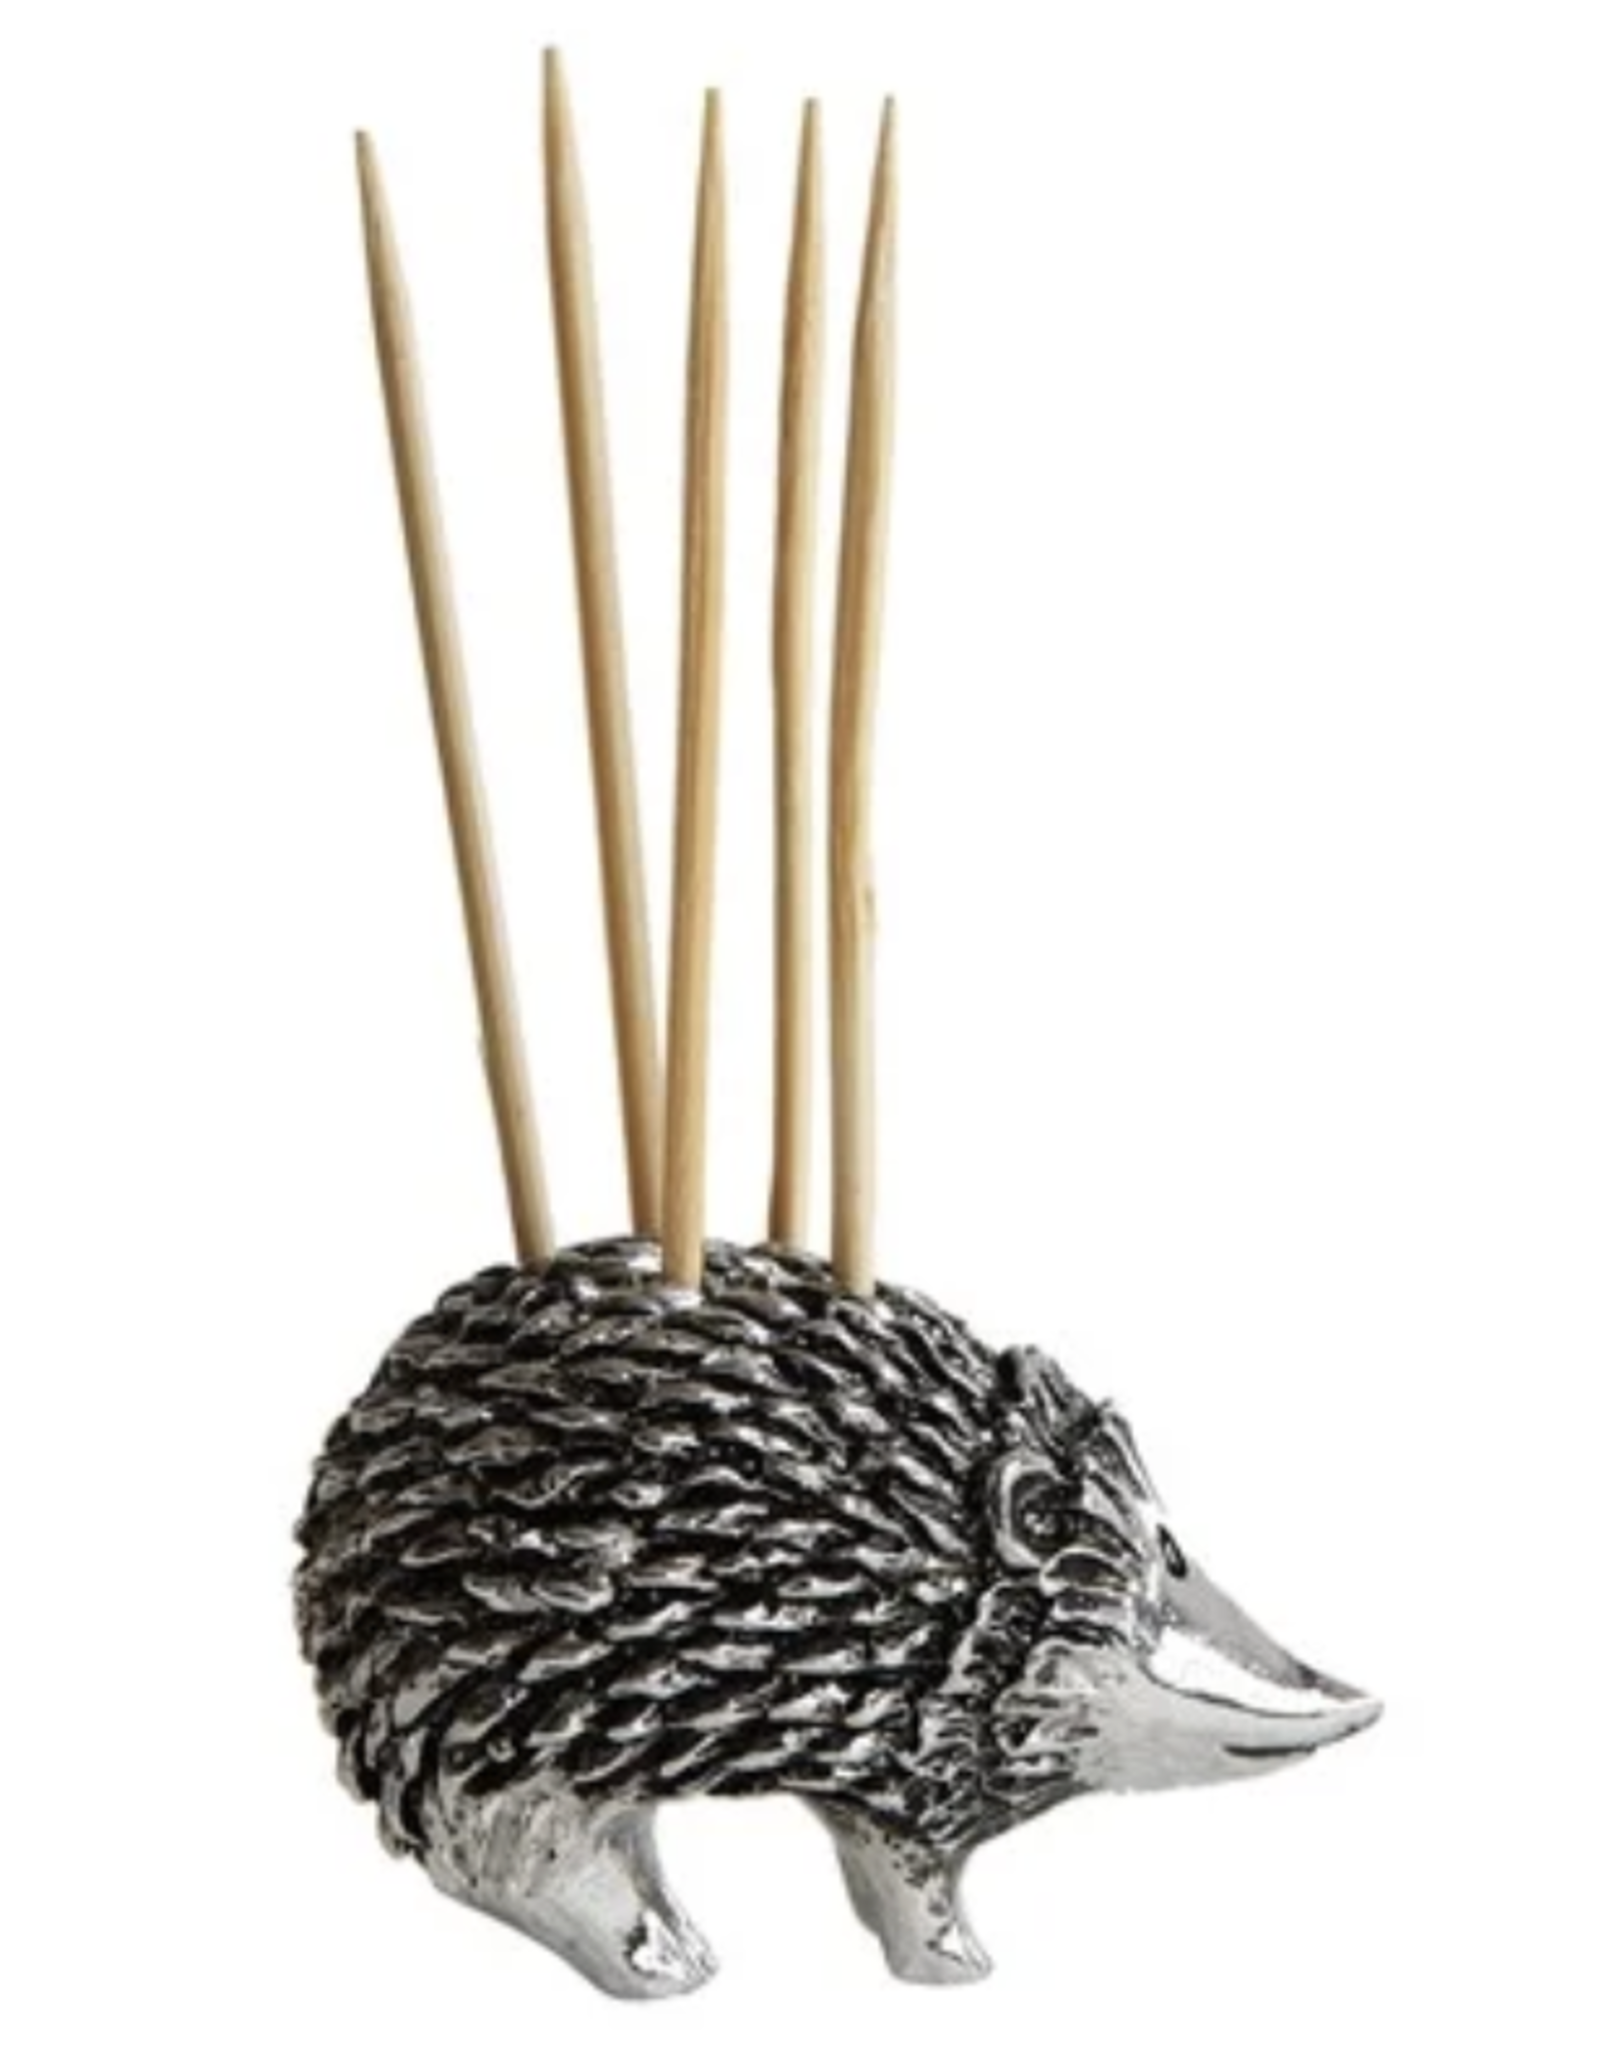 Creative Co-Op Pewter Hedgehog Toothpick Holder